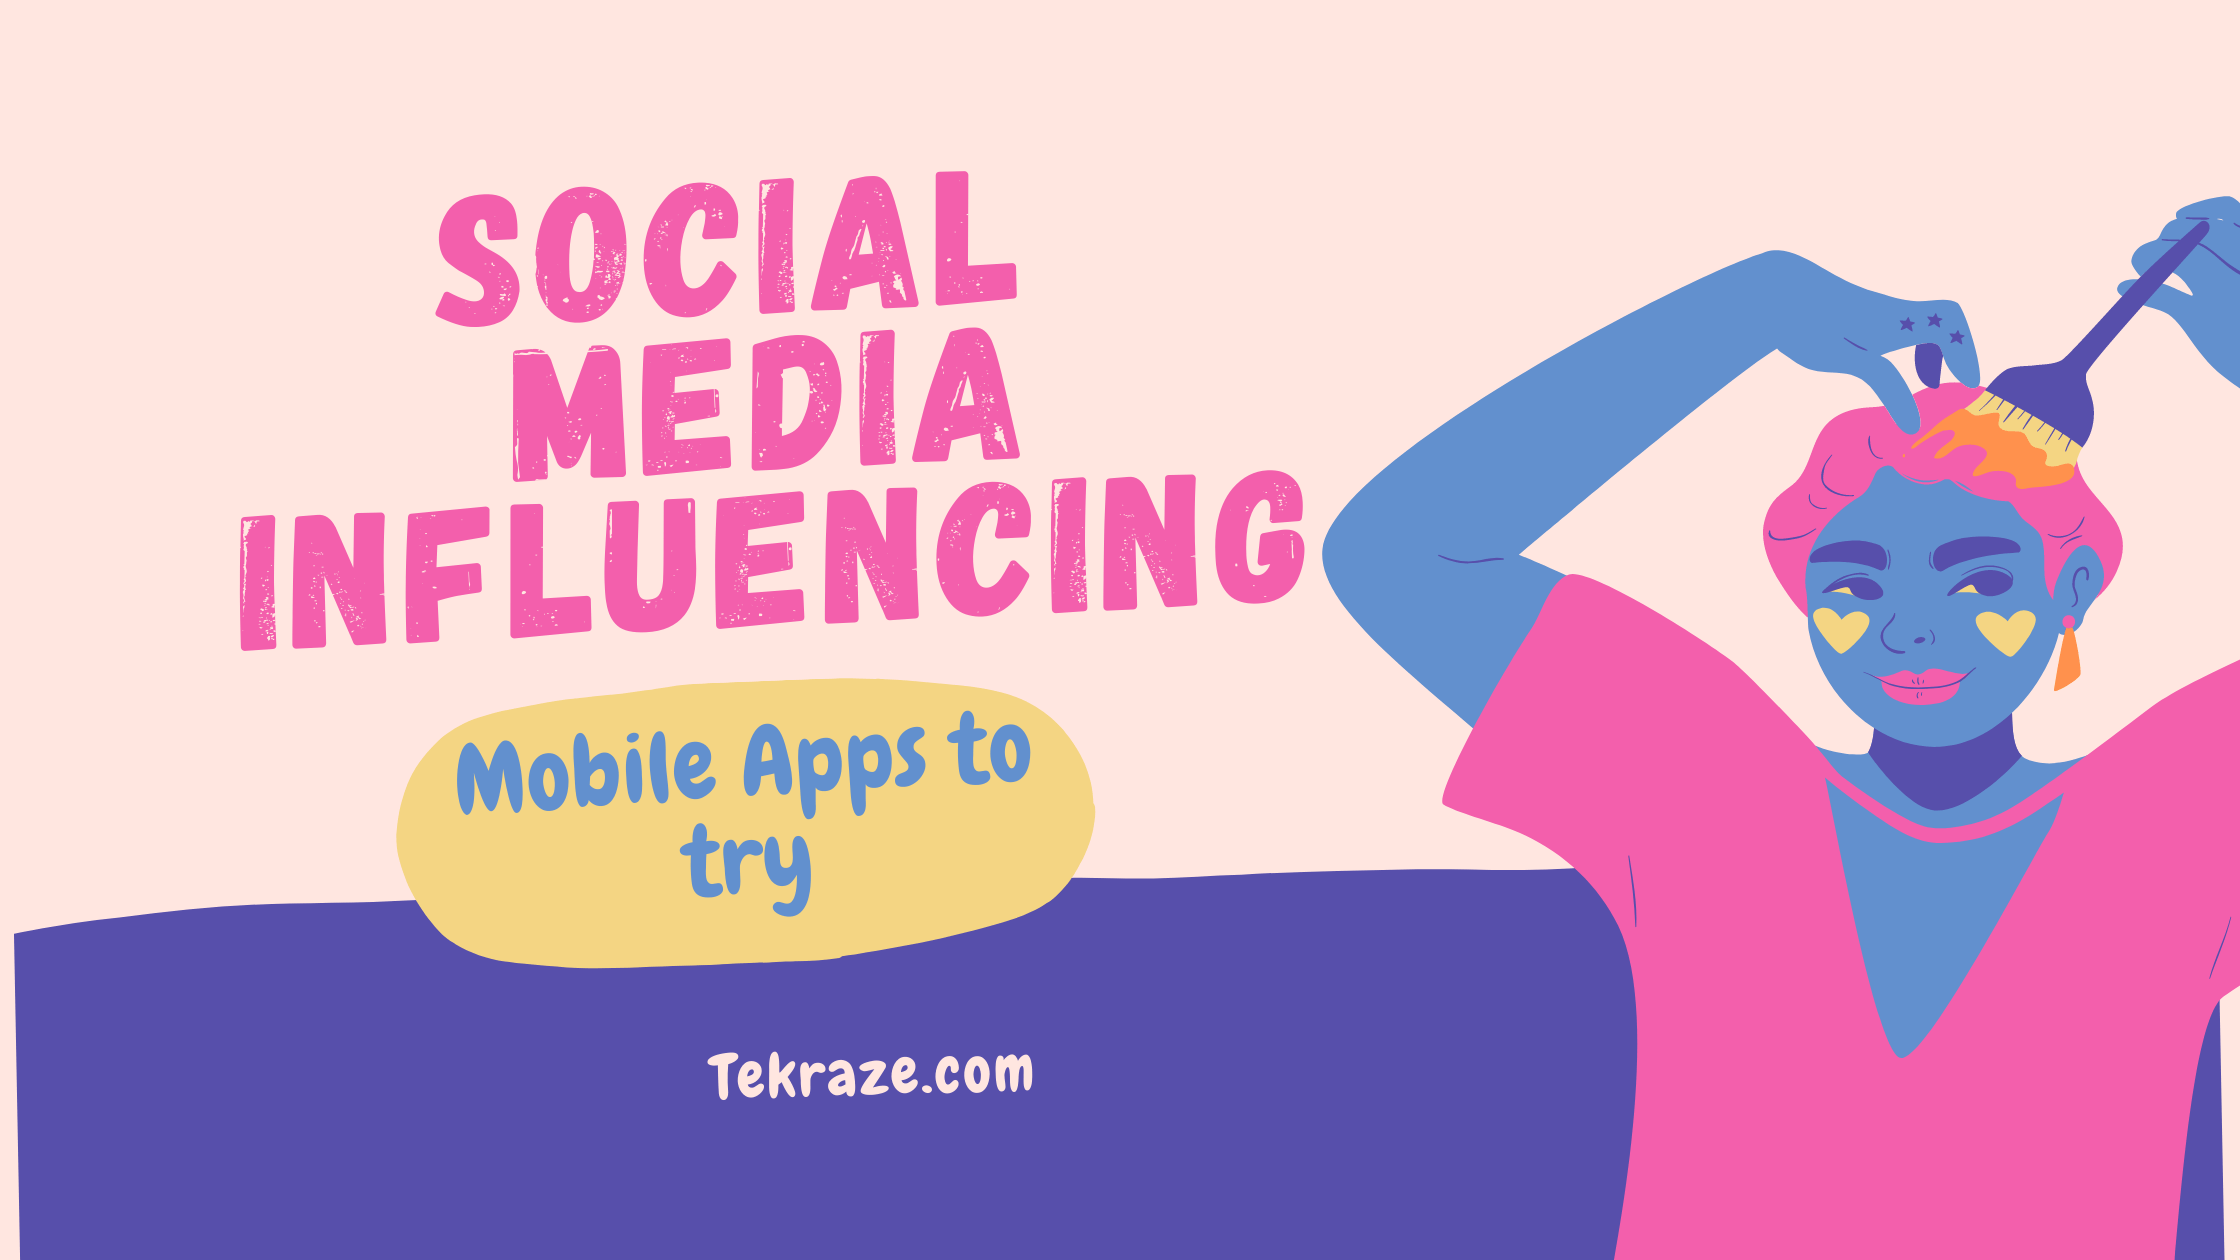 Social Media Influencing Apps for mobile tekraze